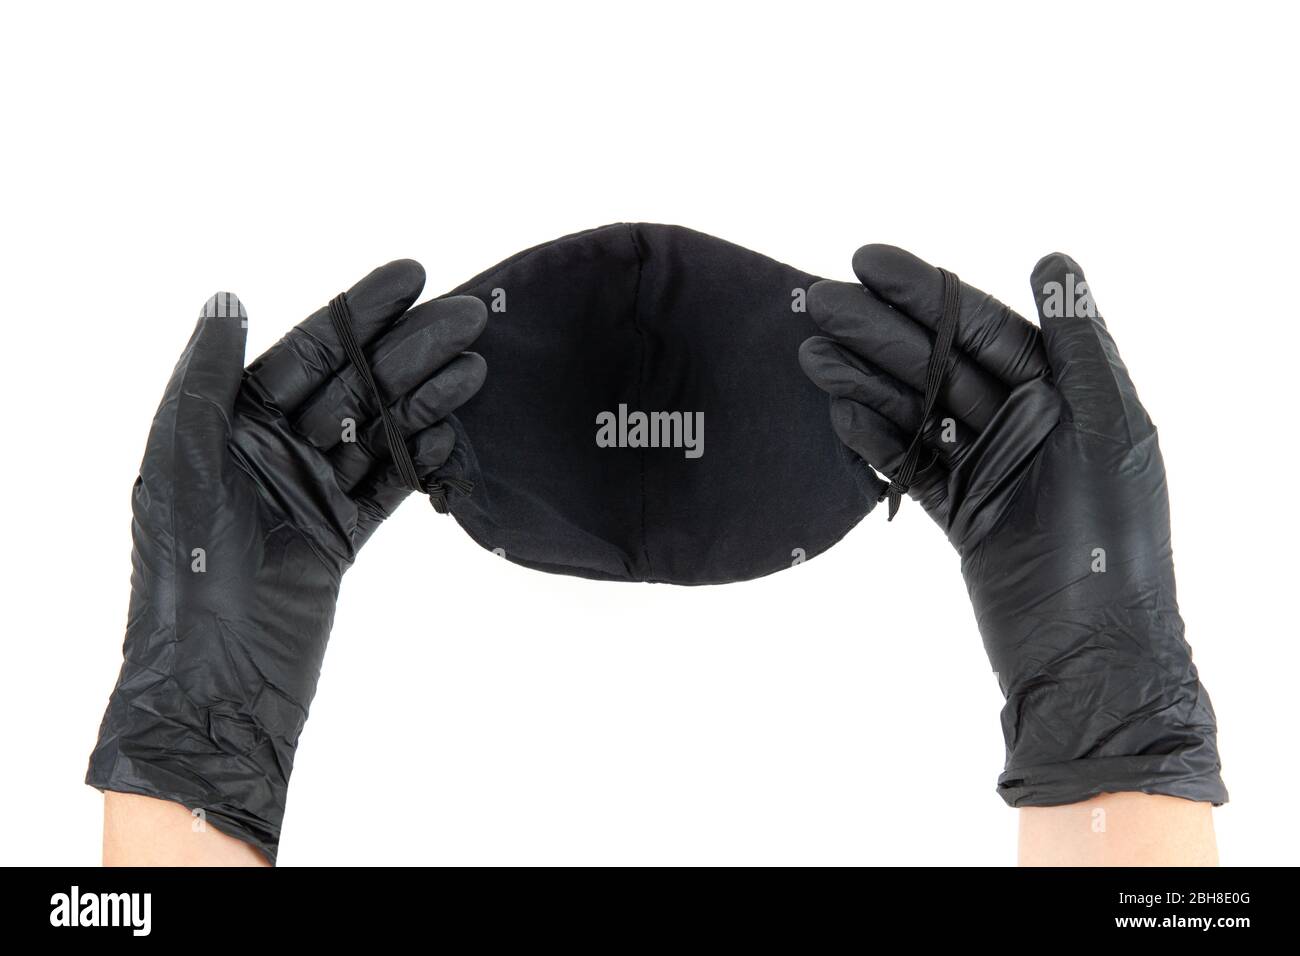 Les mains féminines dans des gants jetables noirs contiennent un masque noir réutilisable en coton. Vue de la première personne, isolée sur blanc. Banque D'Images